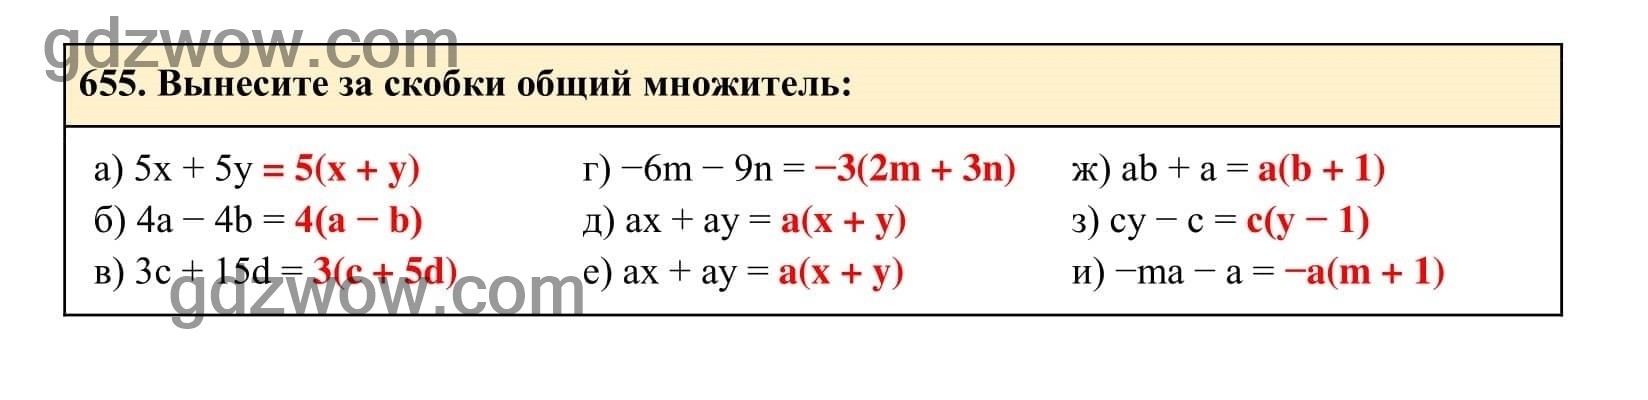 Упражнение 655 - ГДЗ по Алгебре 7 класс Учебник Макарычев (решебник) - GDZwow